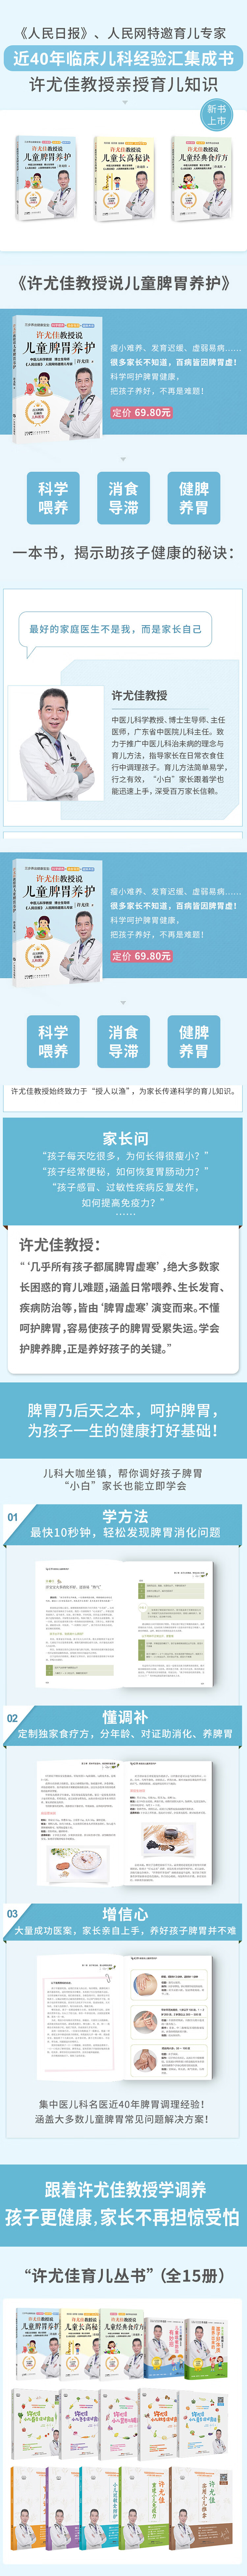 许尤佳教授说儿童脾胃养护 许尤佳 著 9787535979513 广东科技出版社